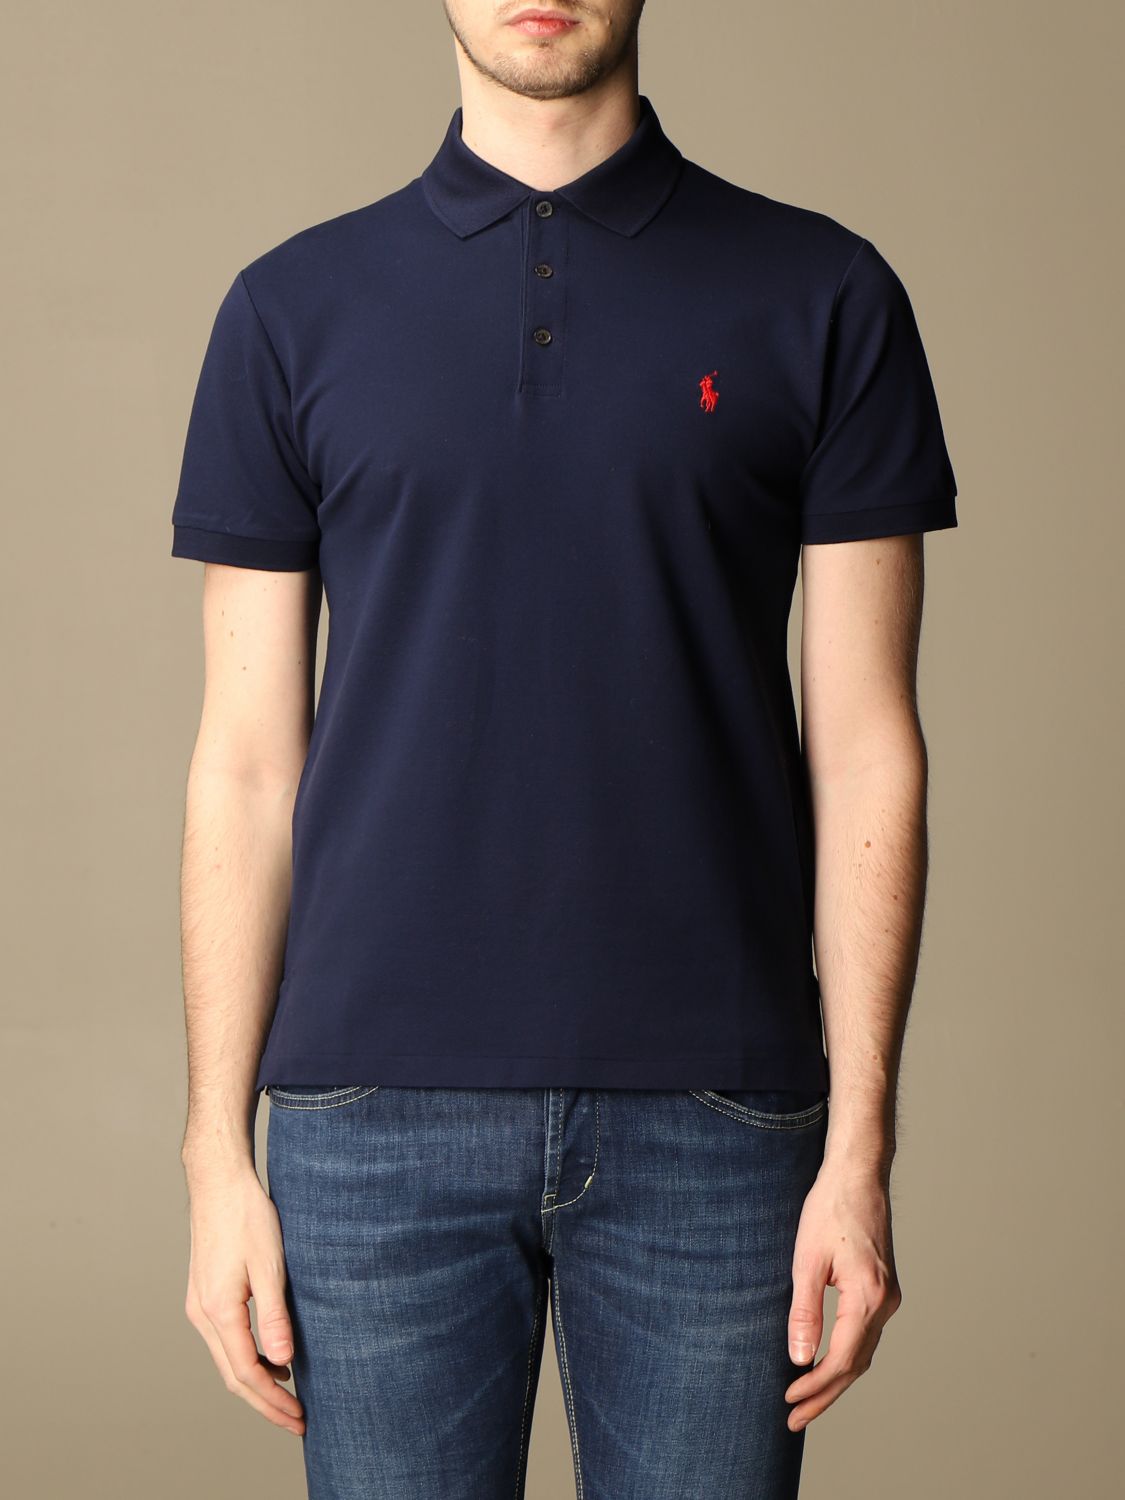 Polo Ralph Lauren Outlet: slim fit cotton polo shirt - Navy | Polo Ralph  Lauren polo shirt 710541705 online on 